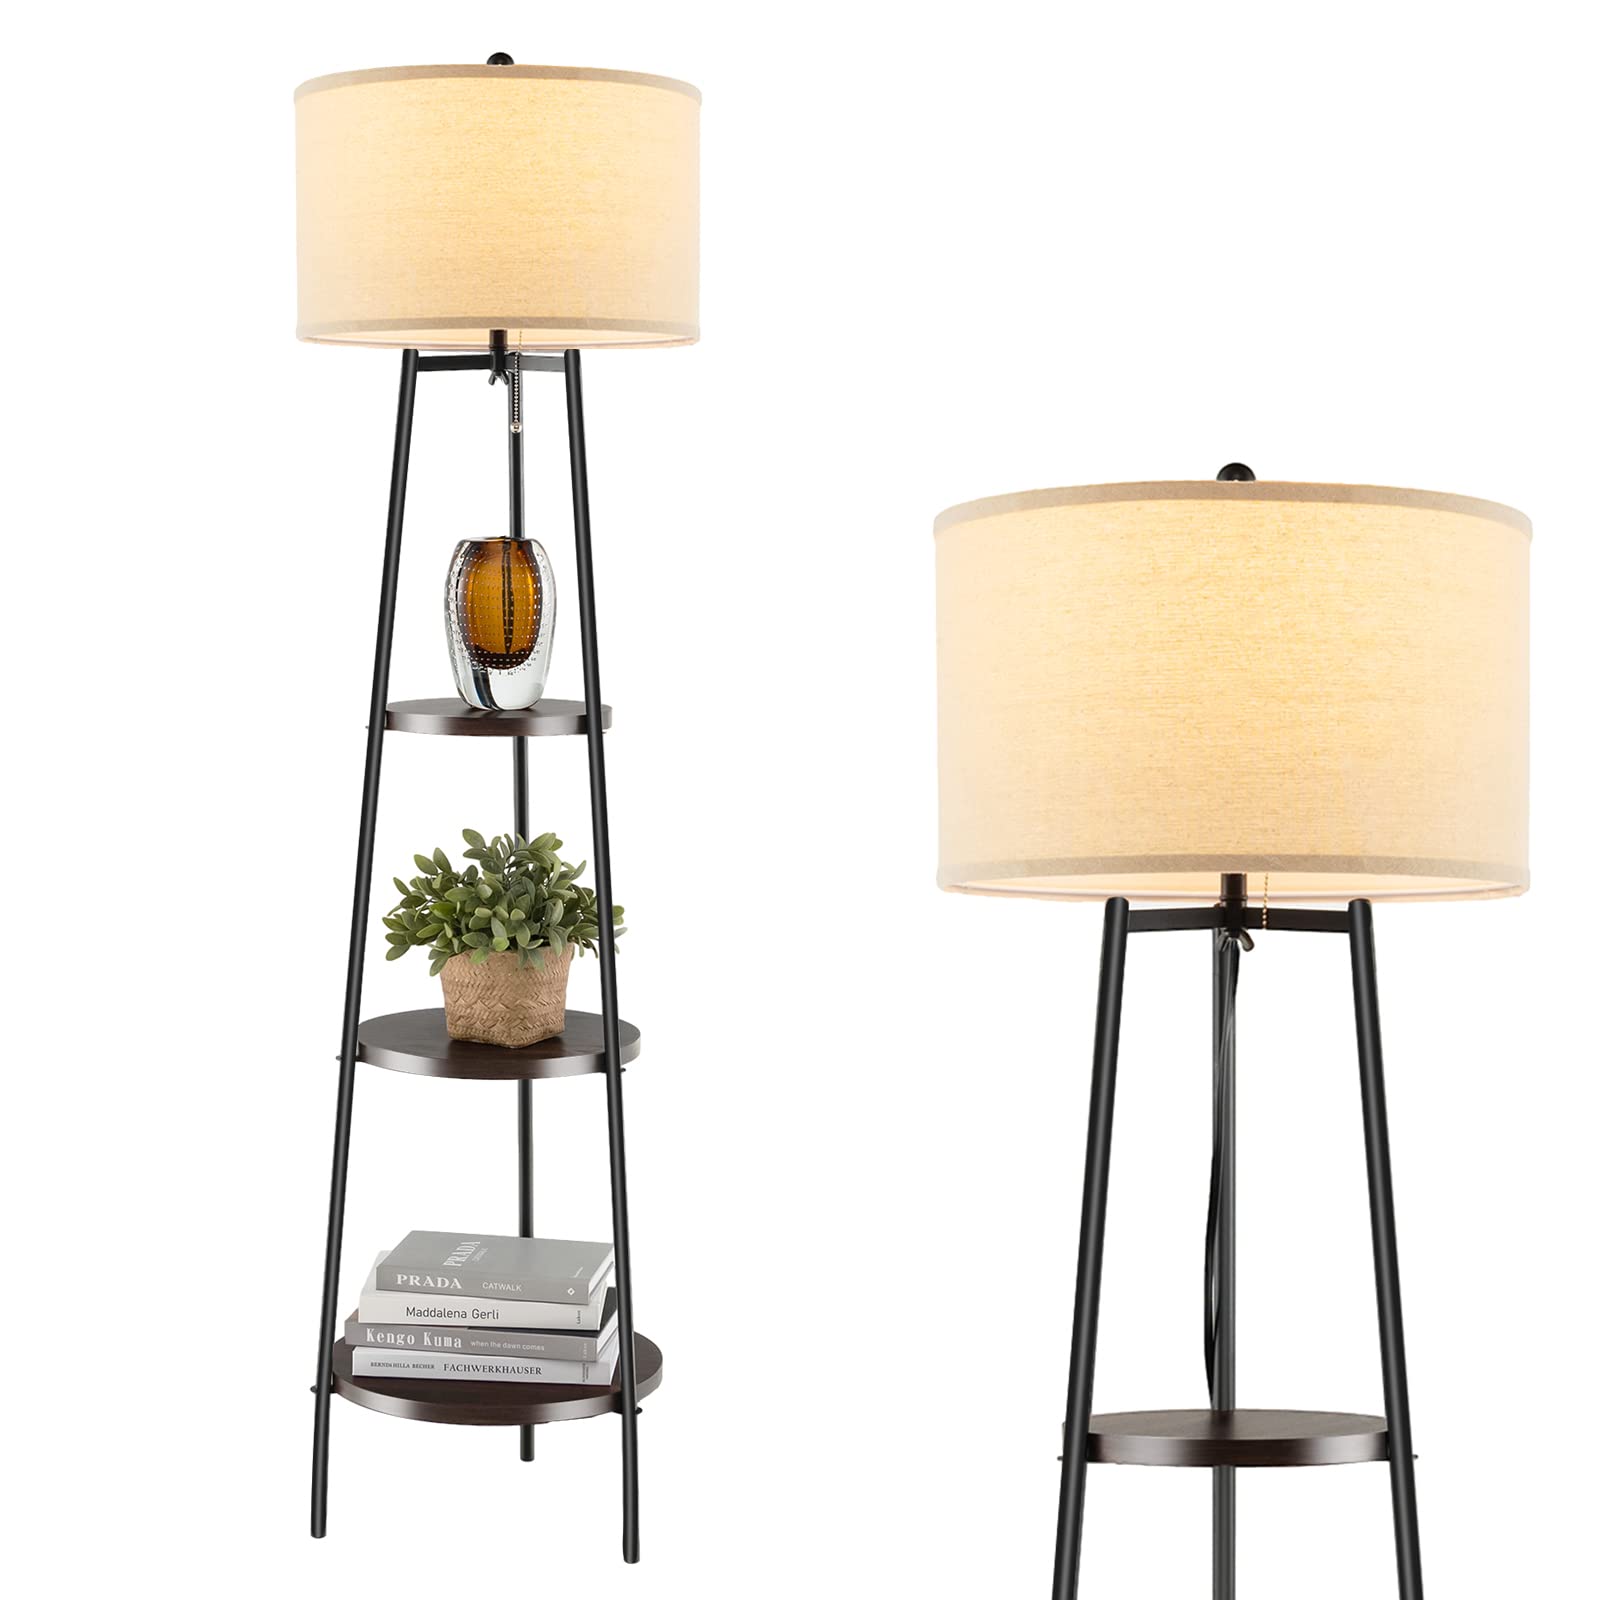 Giantex Floor Lamp with 3-Tier Shelves - Modern Standing Corner Floor Lamp